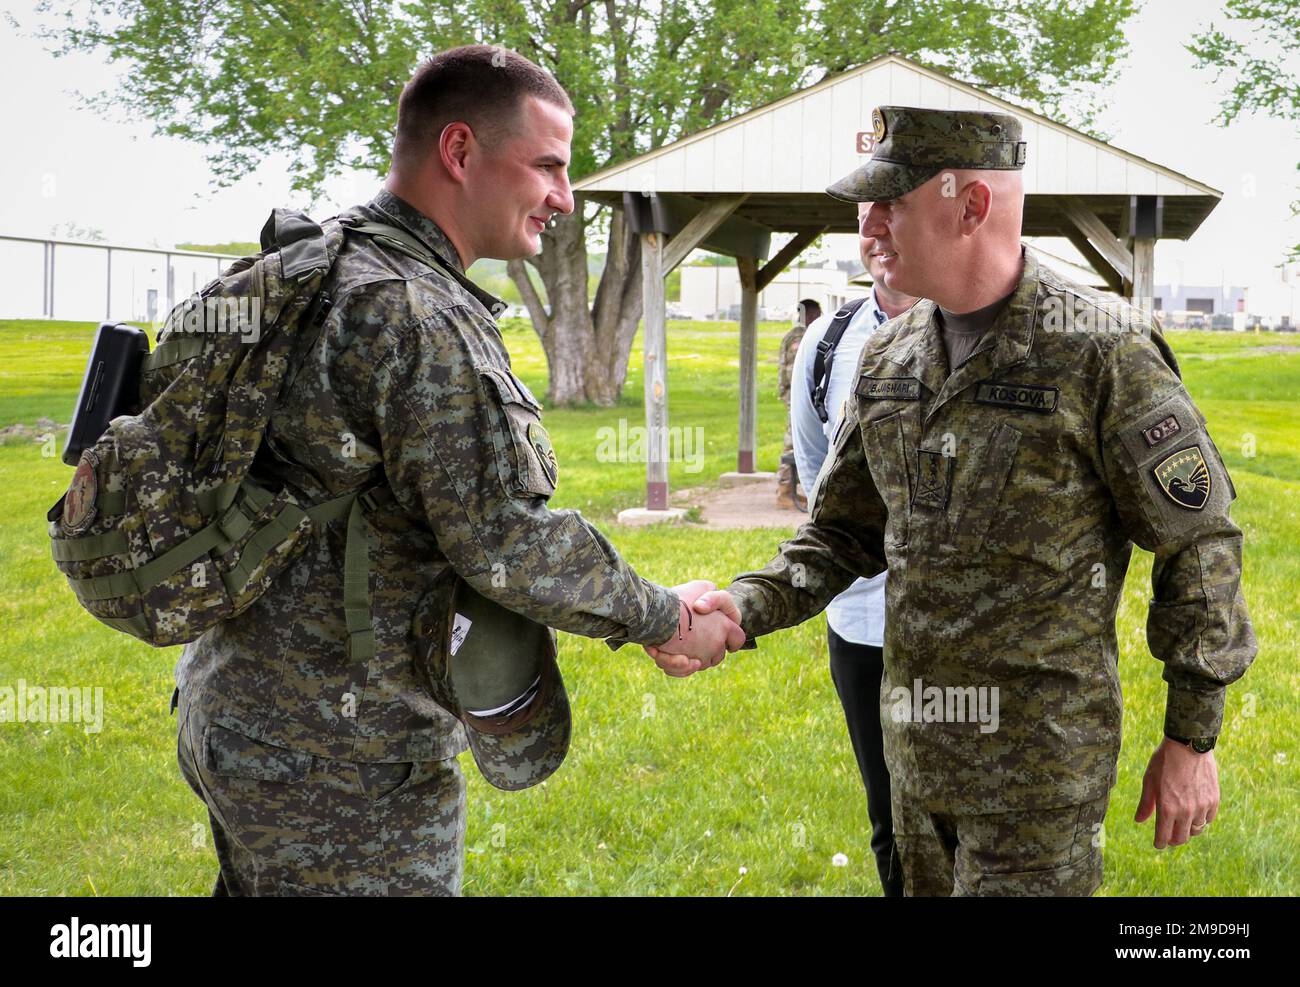 Generalleutnant Bashkim Jashari, Befehlshaber der  Kosovo-Sicherheitseinheit, begrüßt ein KSF-Mitglied, während er am 17. Mai  2022 mit der 209. Medical Company (Area Support) im Camp Dodge in Johnston,  Iowa, Kampfübungen durchführt. Mehrere KSF-Mitglieder